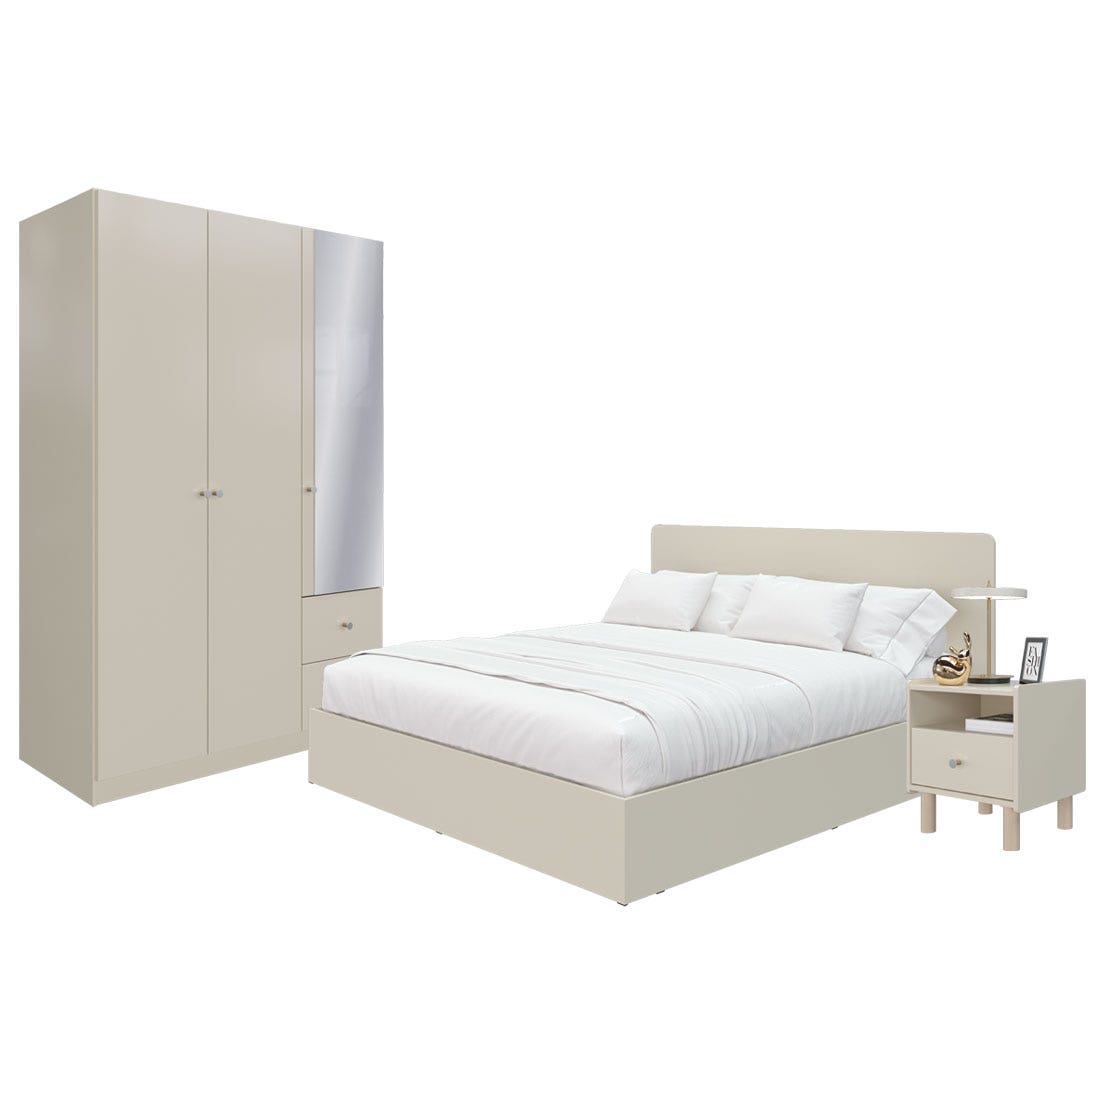 ชุดห้องนอน ขนาด 6 ฟุต  รุ่น Blanca & ตู้เสื้อผ้า 134 ซม. พร้อมตู้ข้างเตียง สีครีม01